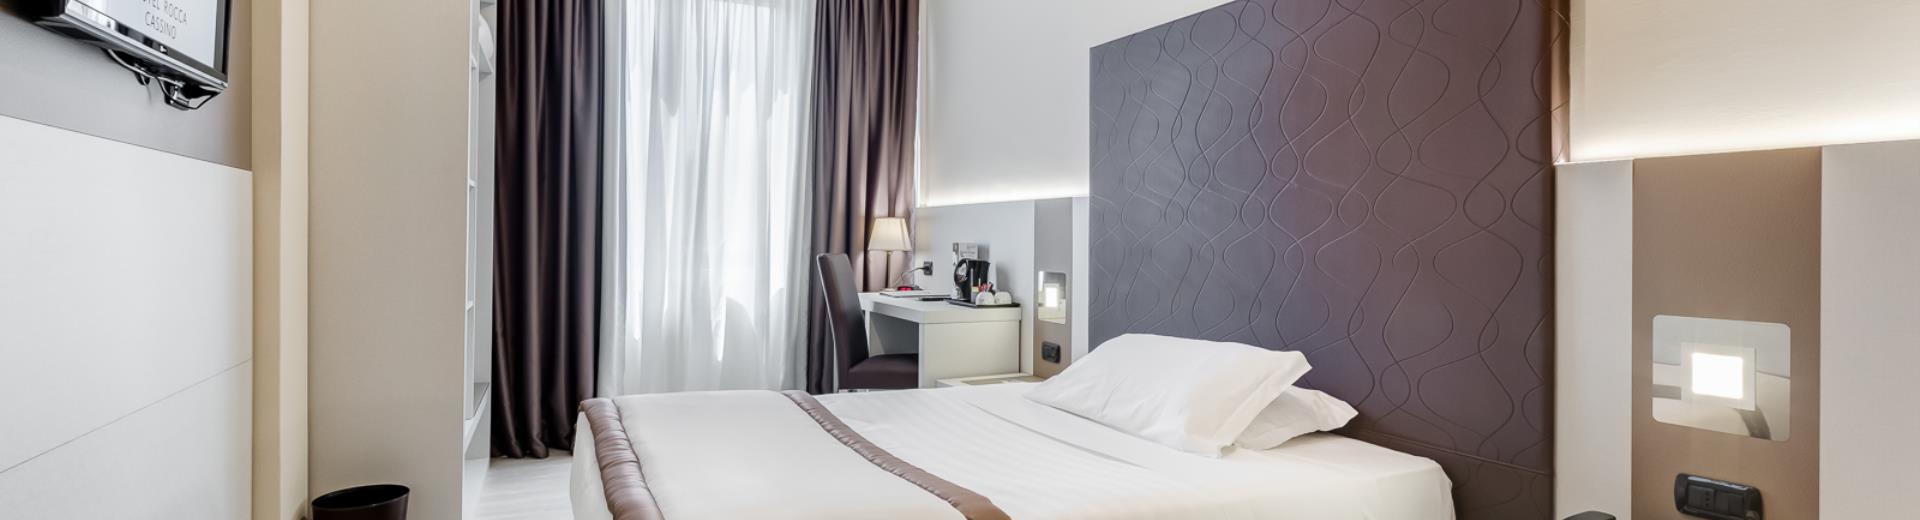 Se viaggi da solo, scegli il comfort della camera singola del Best Western Hotel Rocca a Cassino